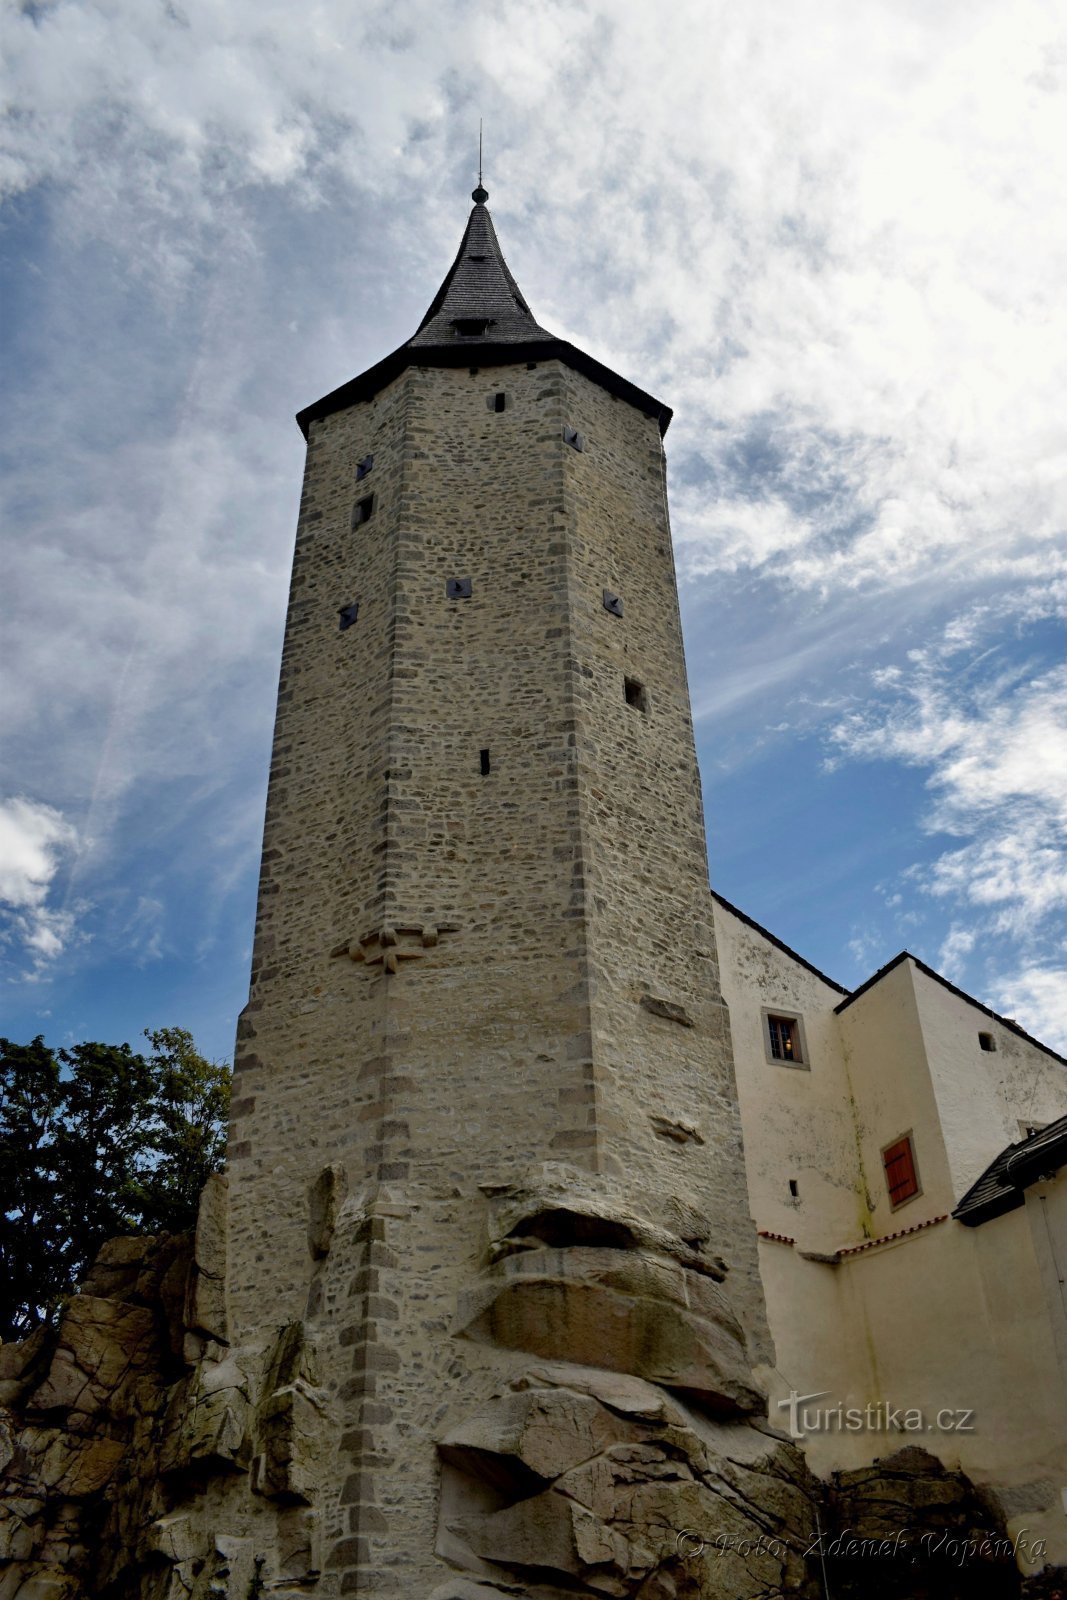 Torre do castelo de sete lados.